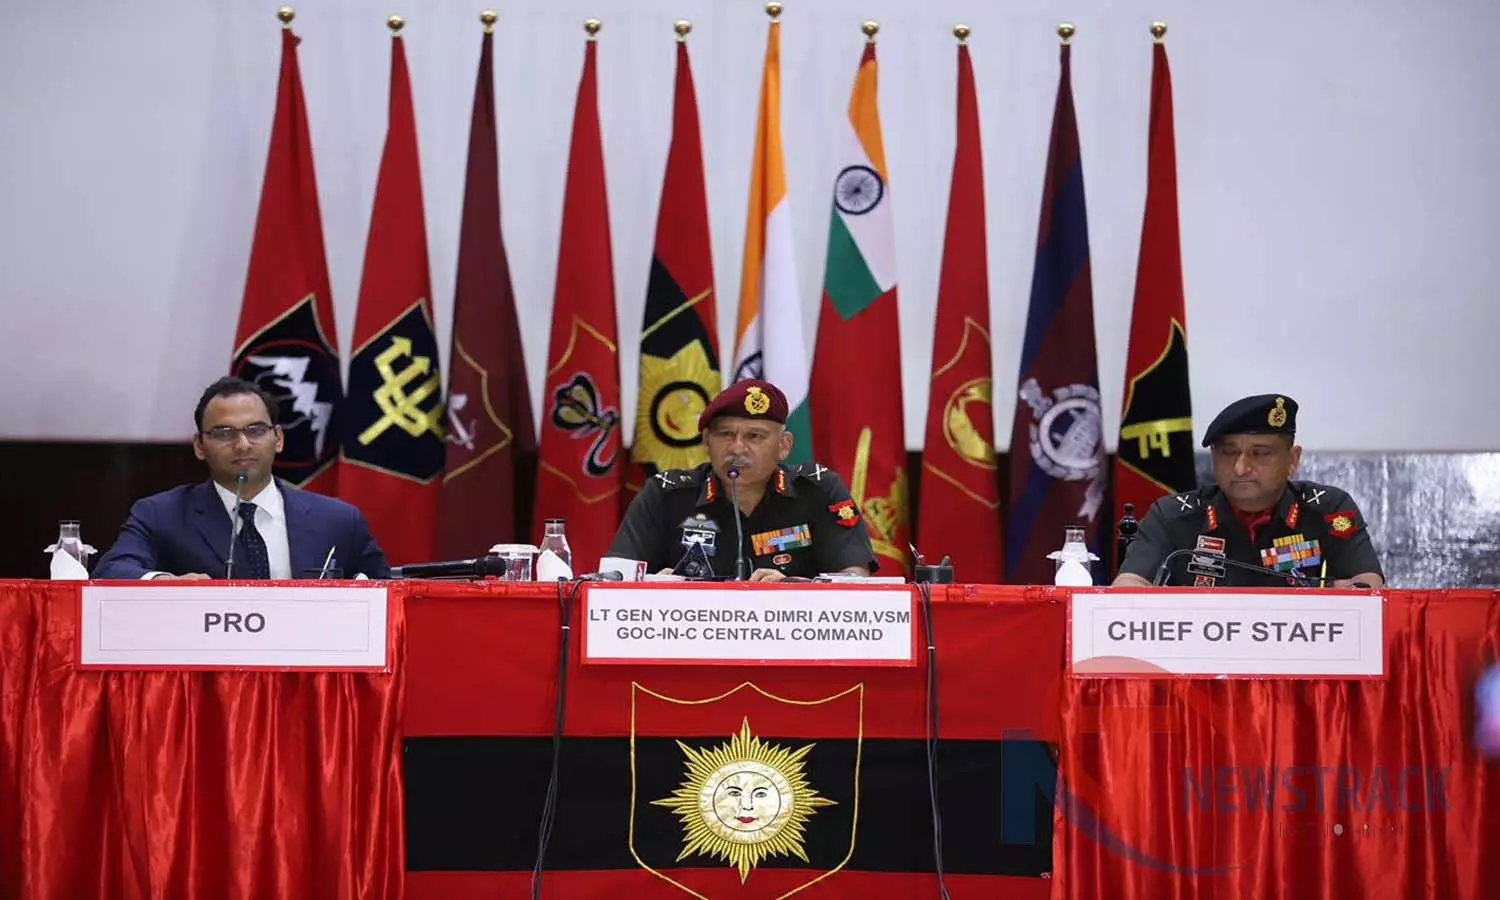 लखनऊ में अग्निपथ योजना पर हुई चर्चा: मध्य कमान के सेनाध्यक्ष लेफ्टिनेंट  जनरल डिमरी बोले- देश को यंग इंडिया बनाना, हर तीन महीने पर होगी भर्ती